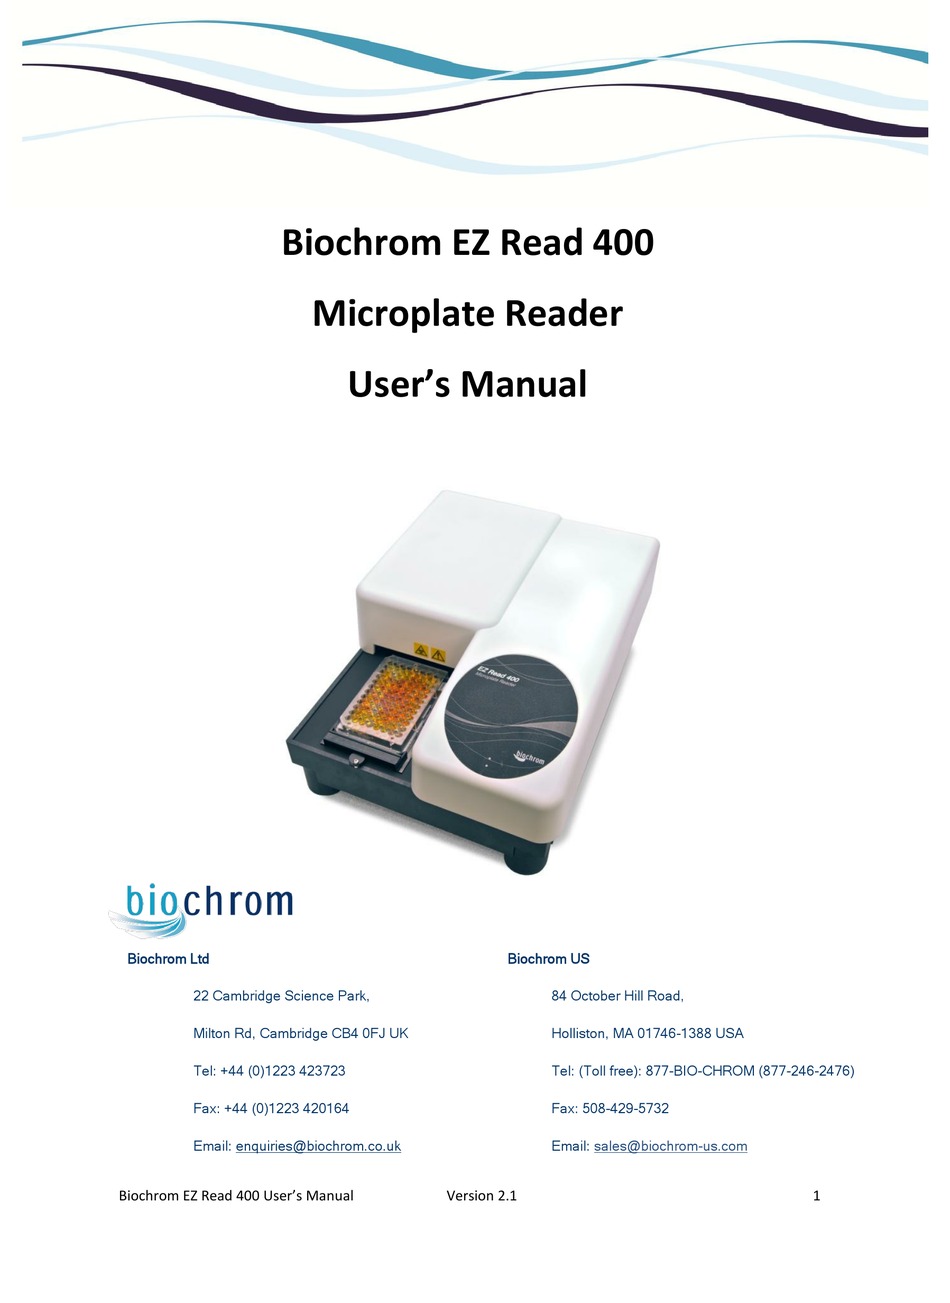 Biochrom Ez Read 400 User Manual Pdf Download Manualslib